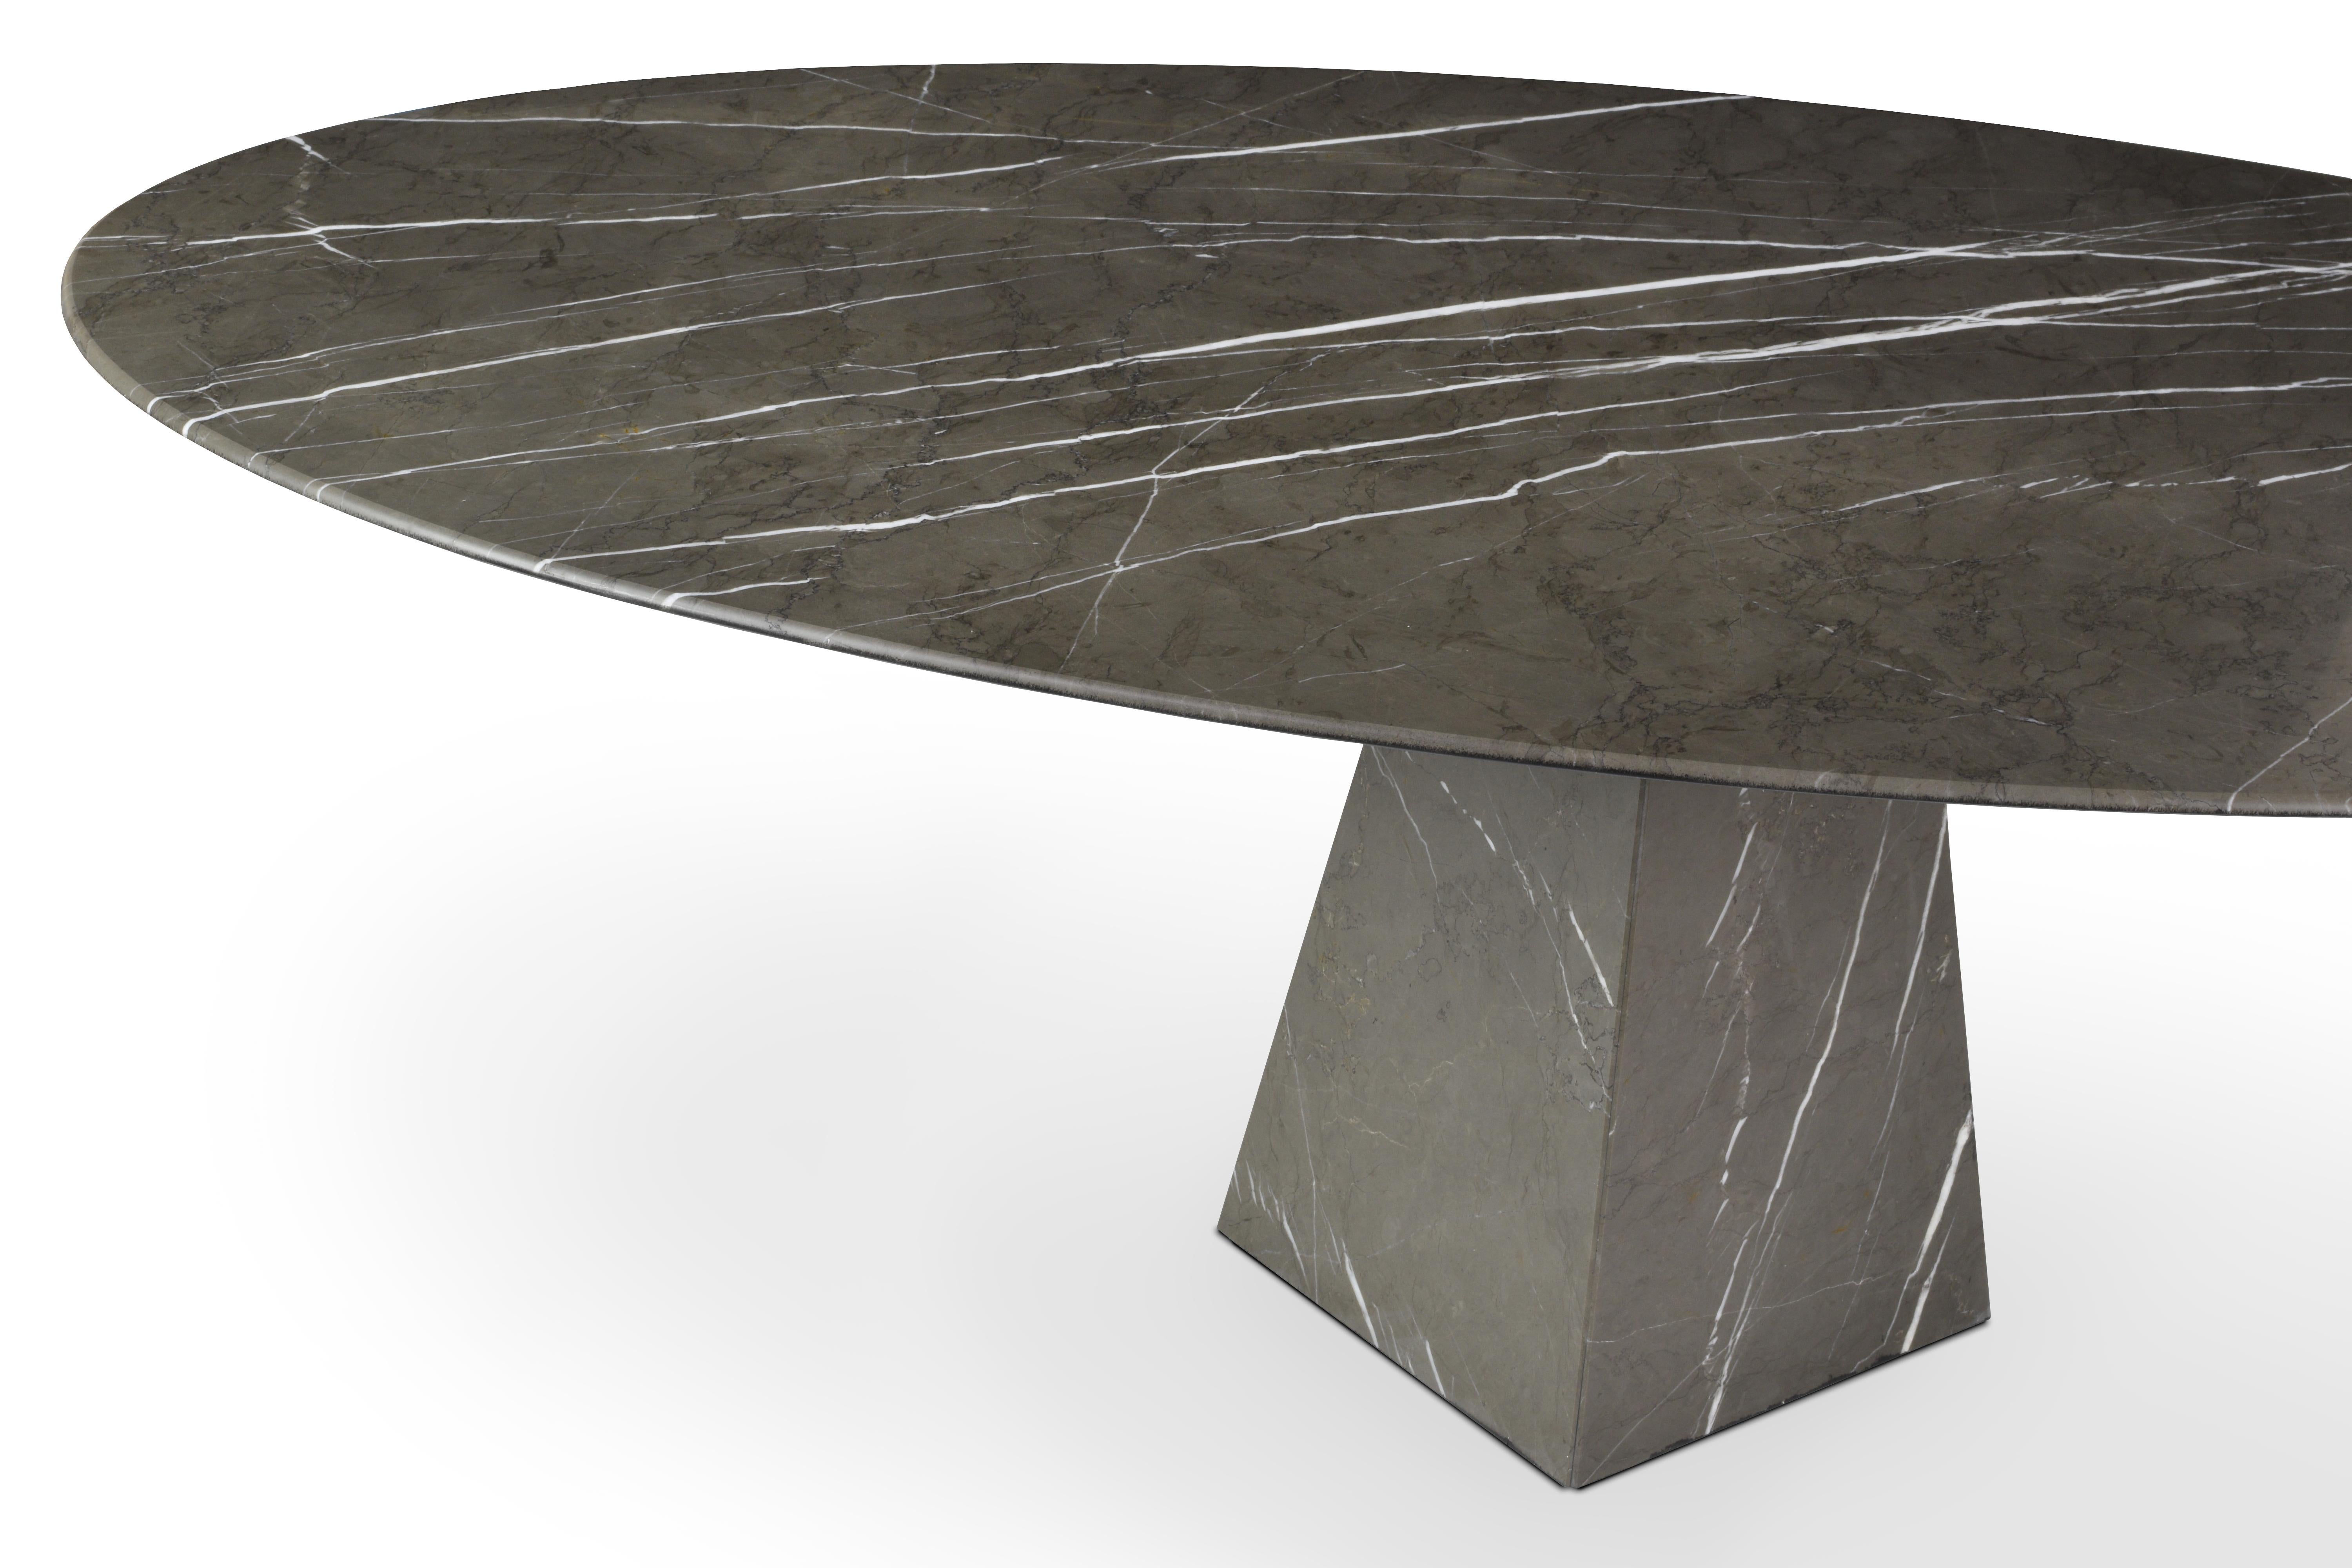 Inspiré par la sensation d'apesanteur et son lien avec l'espace, entièrement réalisé en pierre stratifiée.
Cette technique avancée nous permet d'obtenir un plateau de table en marbre ultra-fin et très résistant. Les tables sont légères, simples,